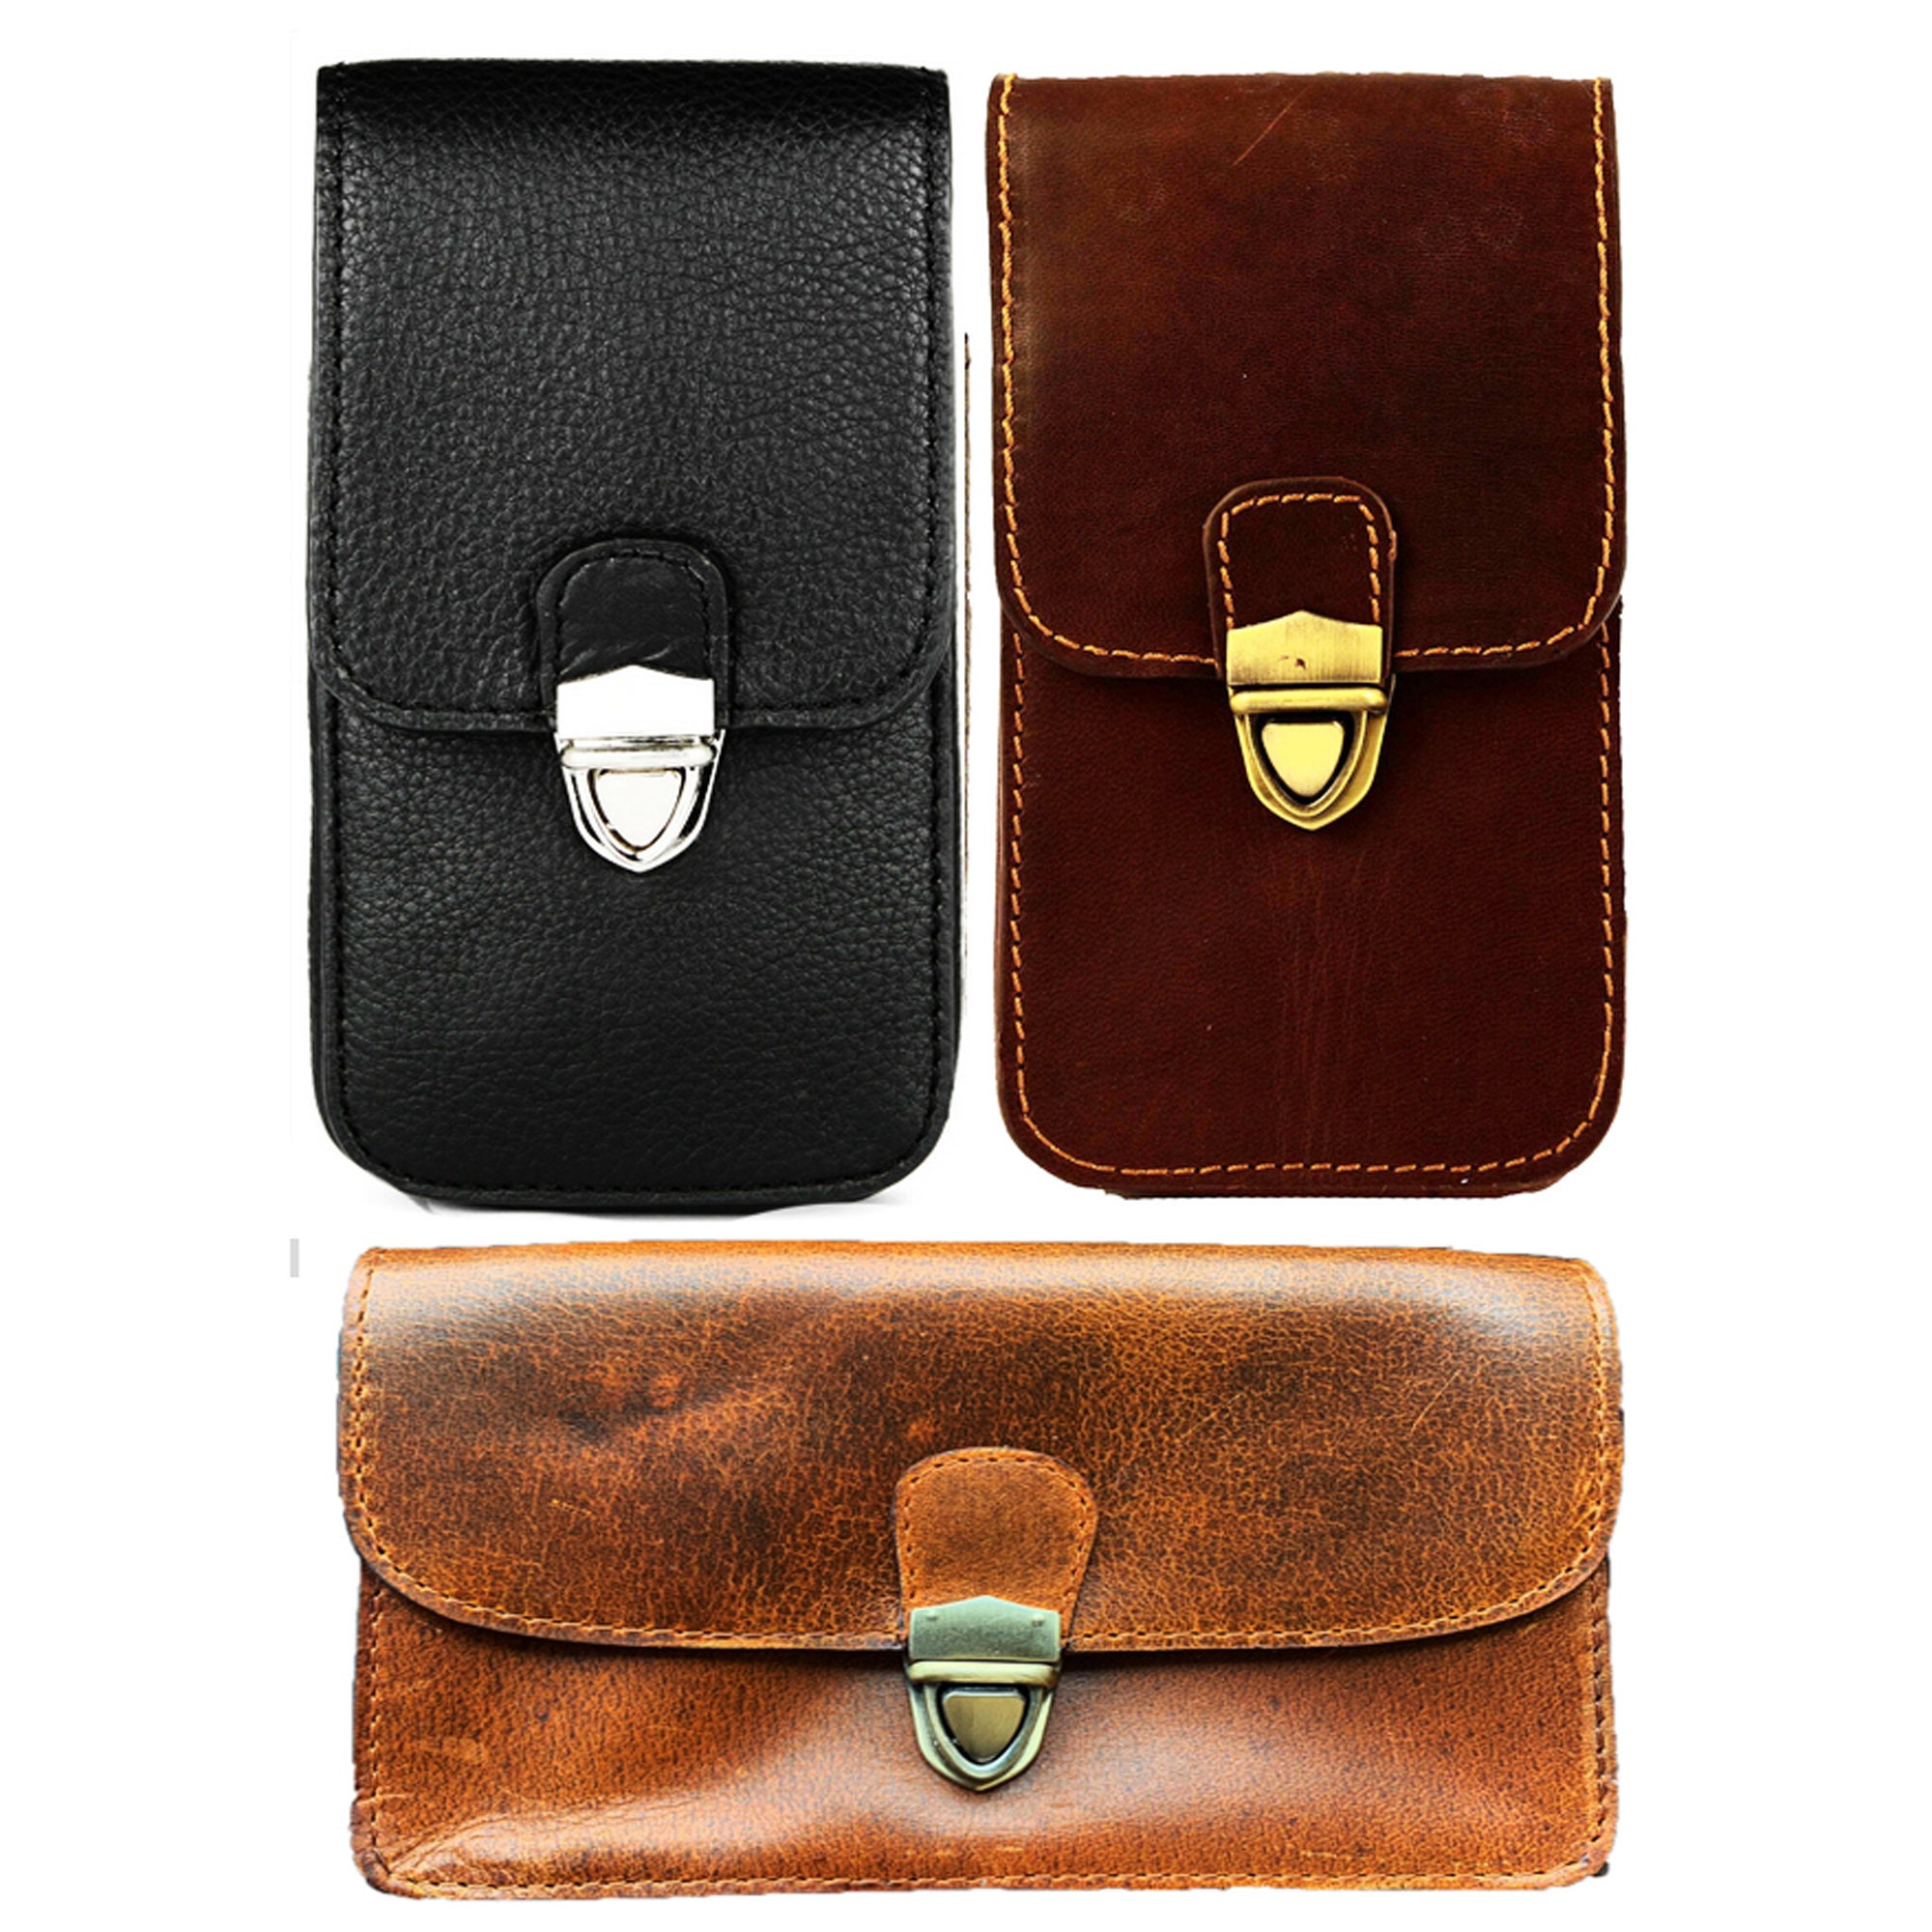 Gürteltasche Handy Tasche #G41 160x80x15mm Handytasche Gürtel Herren  Smartphone